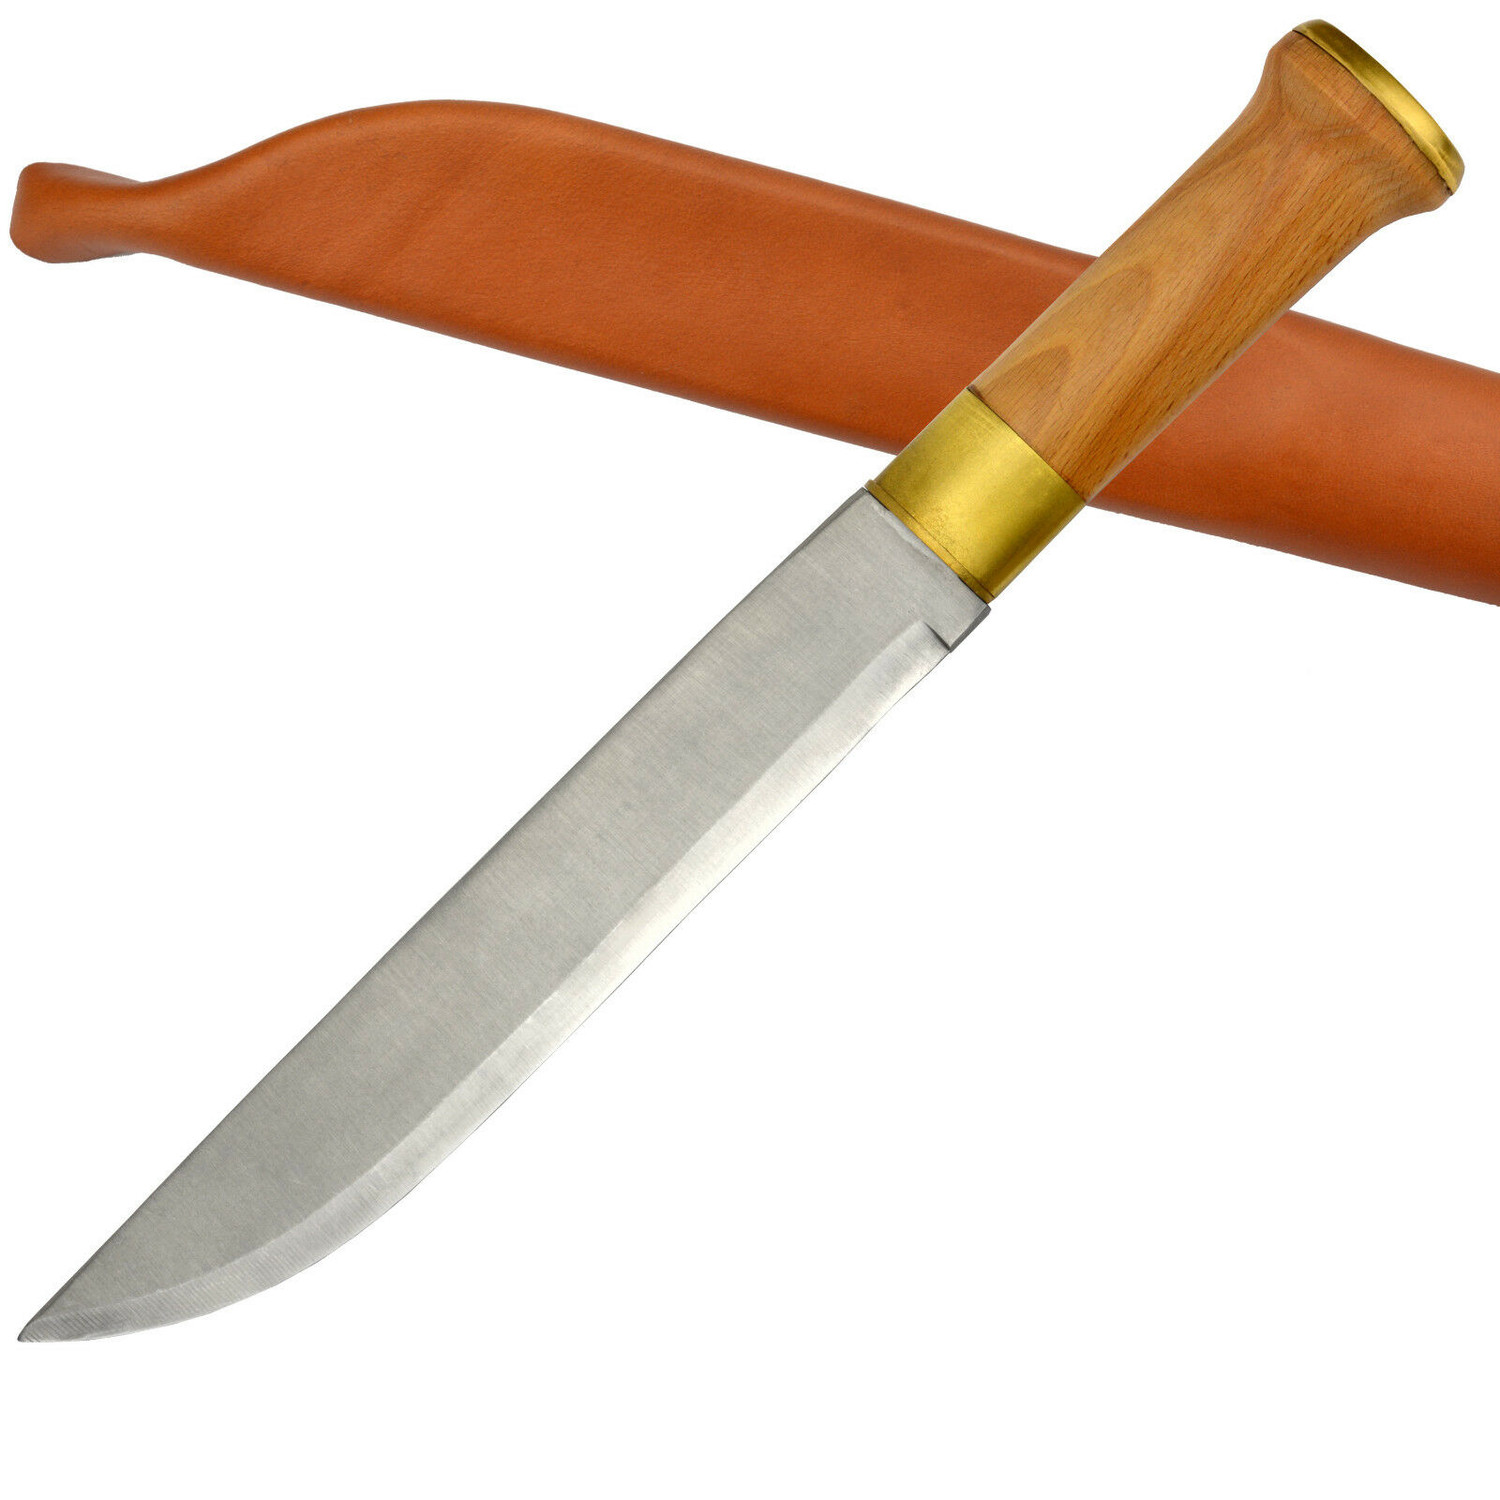 Finnenmesser 35 cm mit Lederscheide - Outdoor- und Anglermesser mit Holzgriff